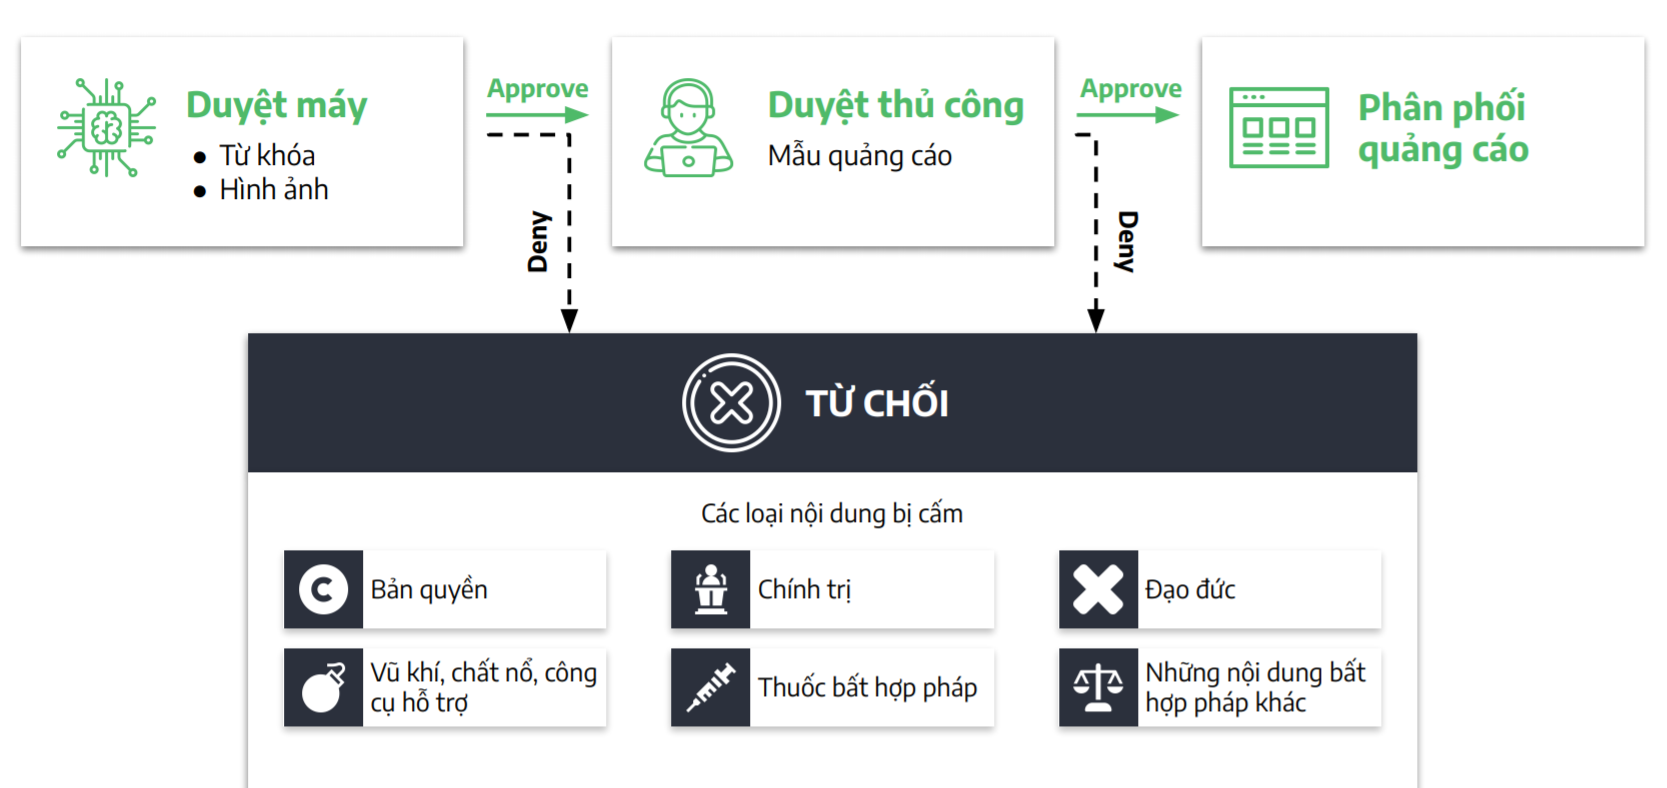 Ra mắt Cốc Cốc Audience Network - Mạng quảng cáo trực tuyến sở hữu hệ sinh thái hàng đầu Việt Nam 7